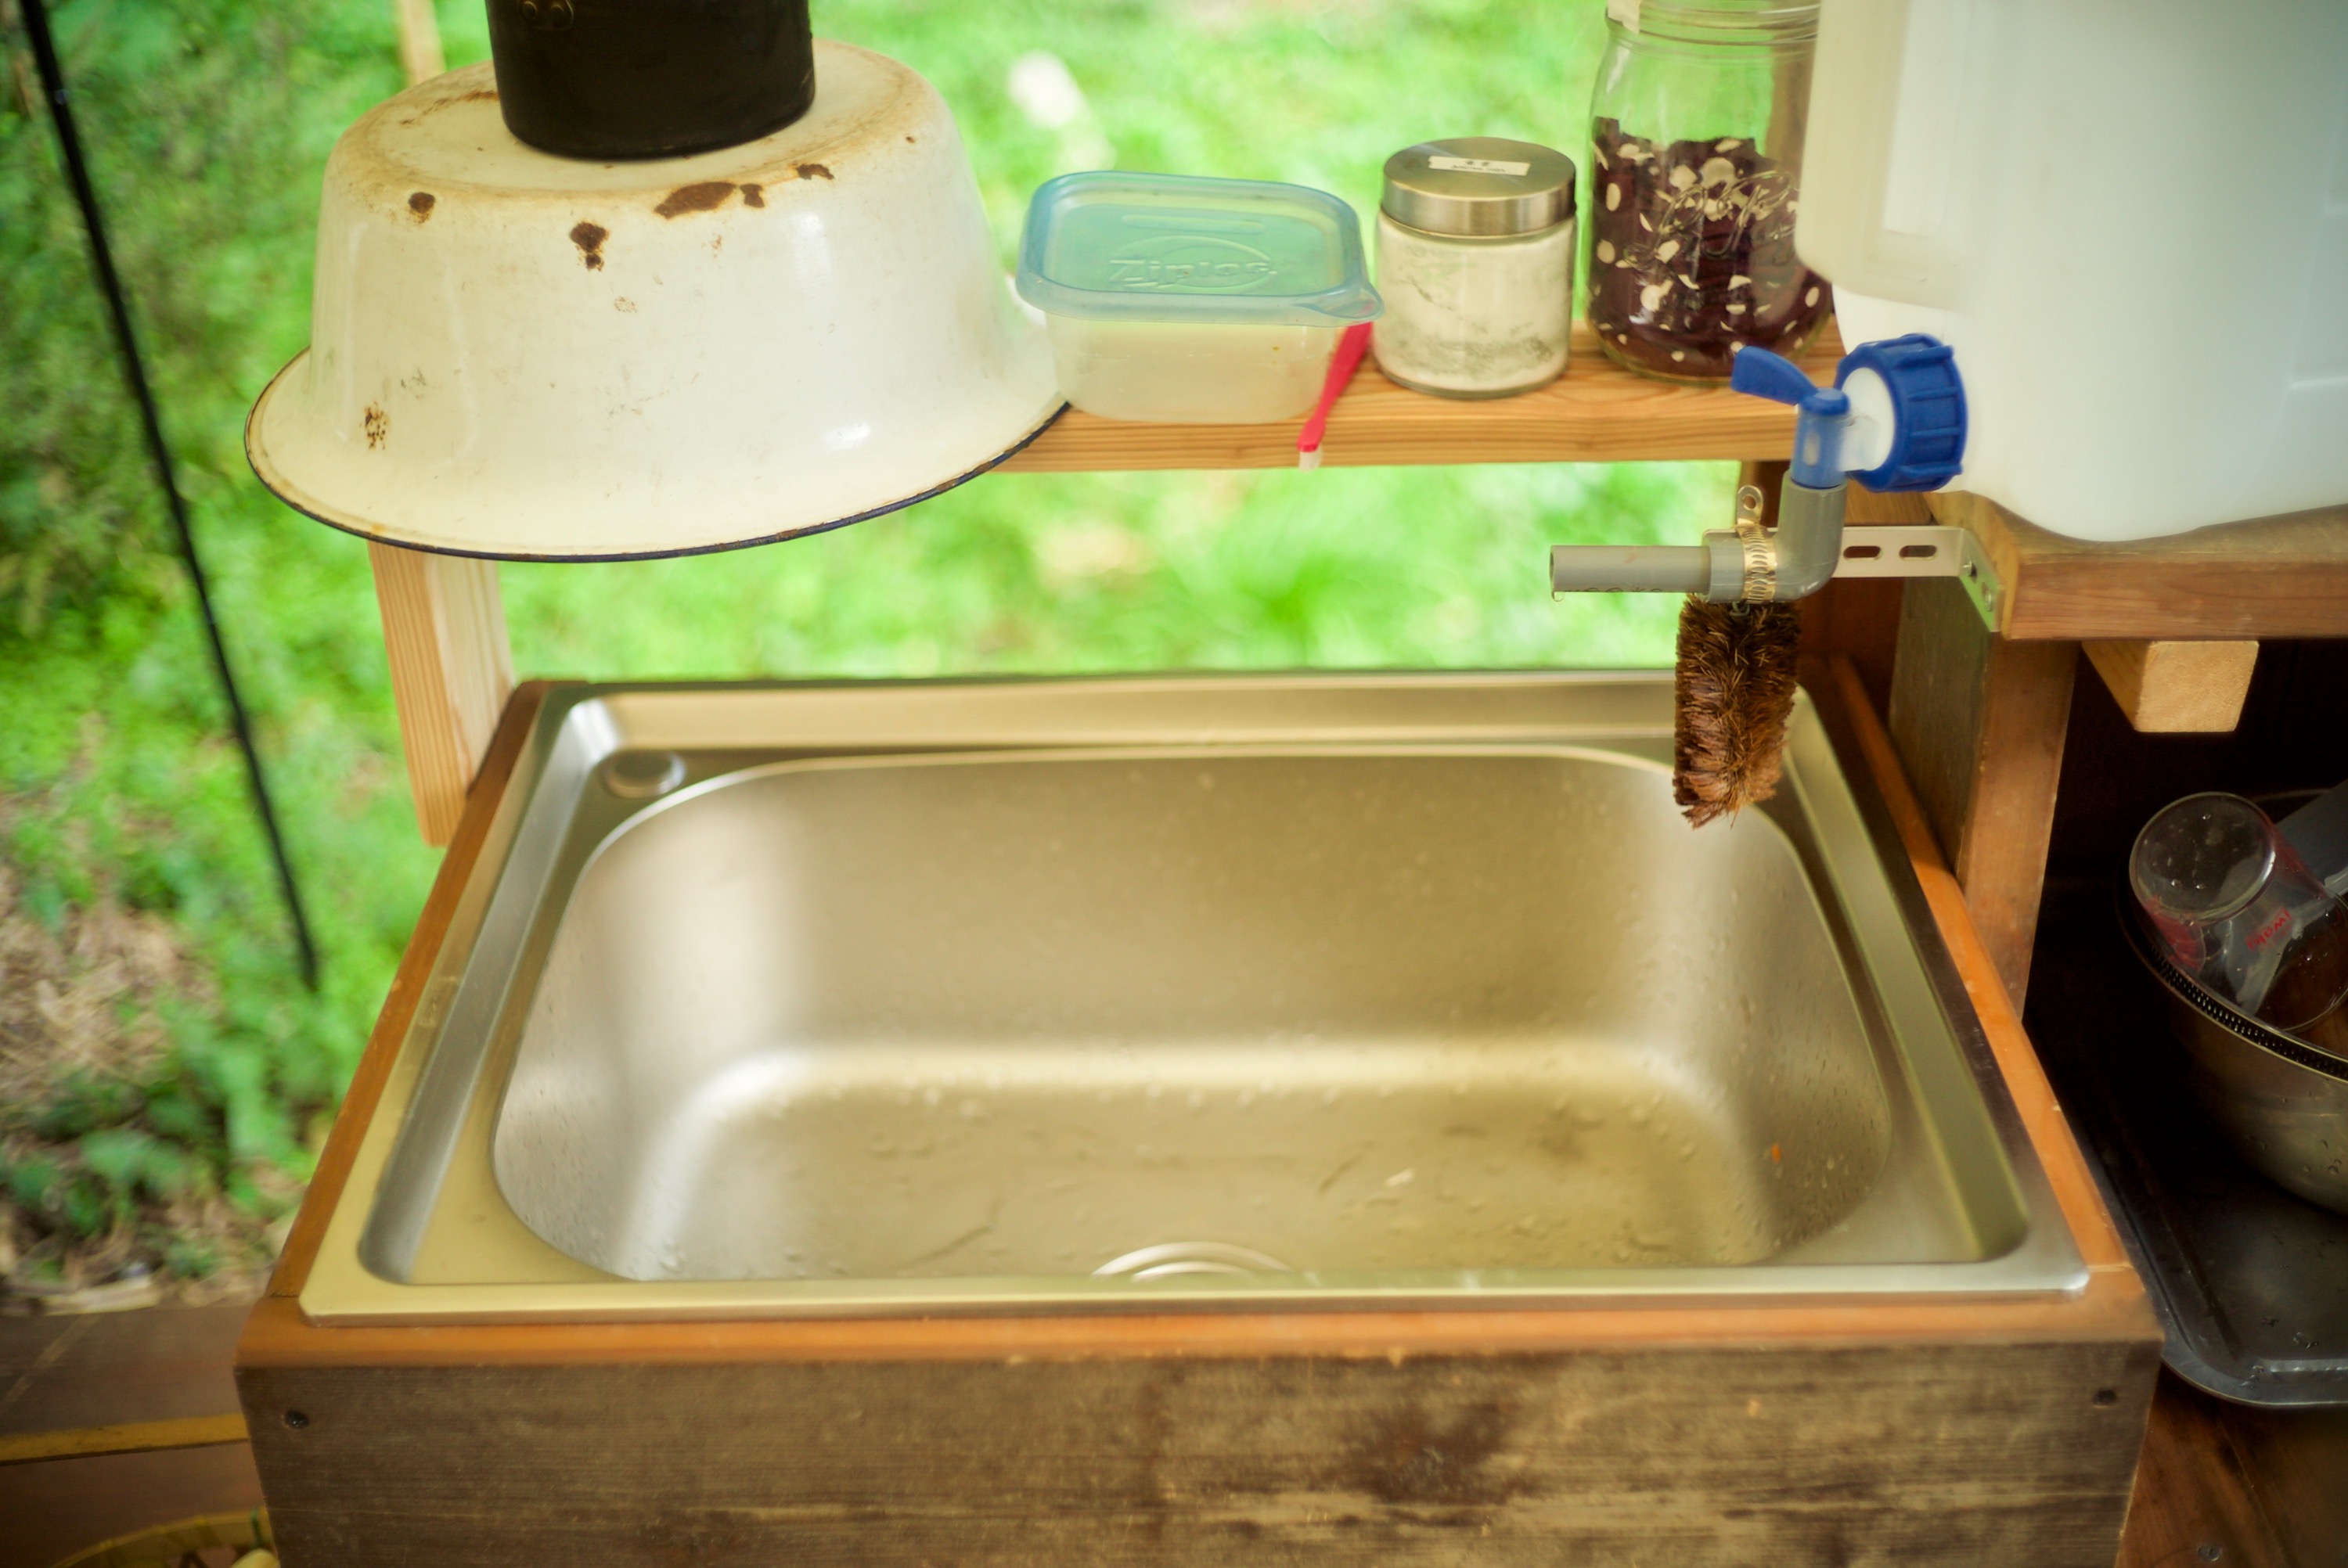 Outdoor Kitchen ”Sink”